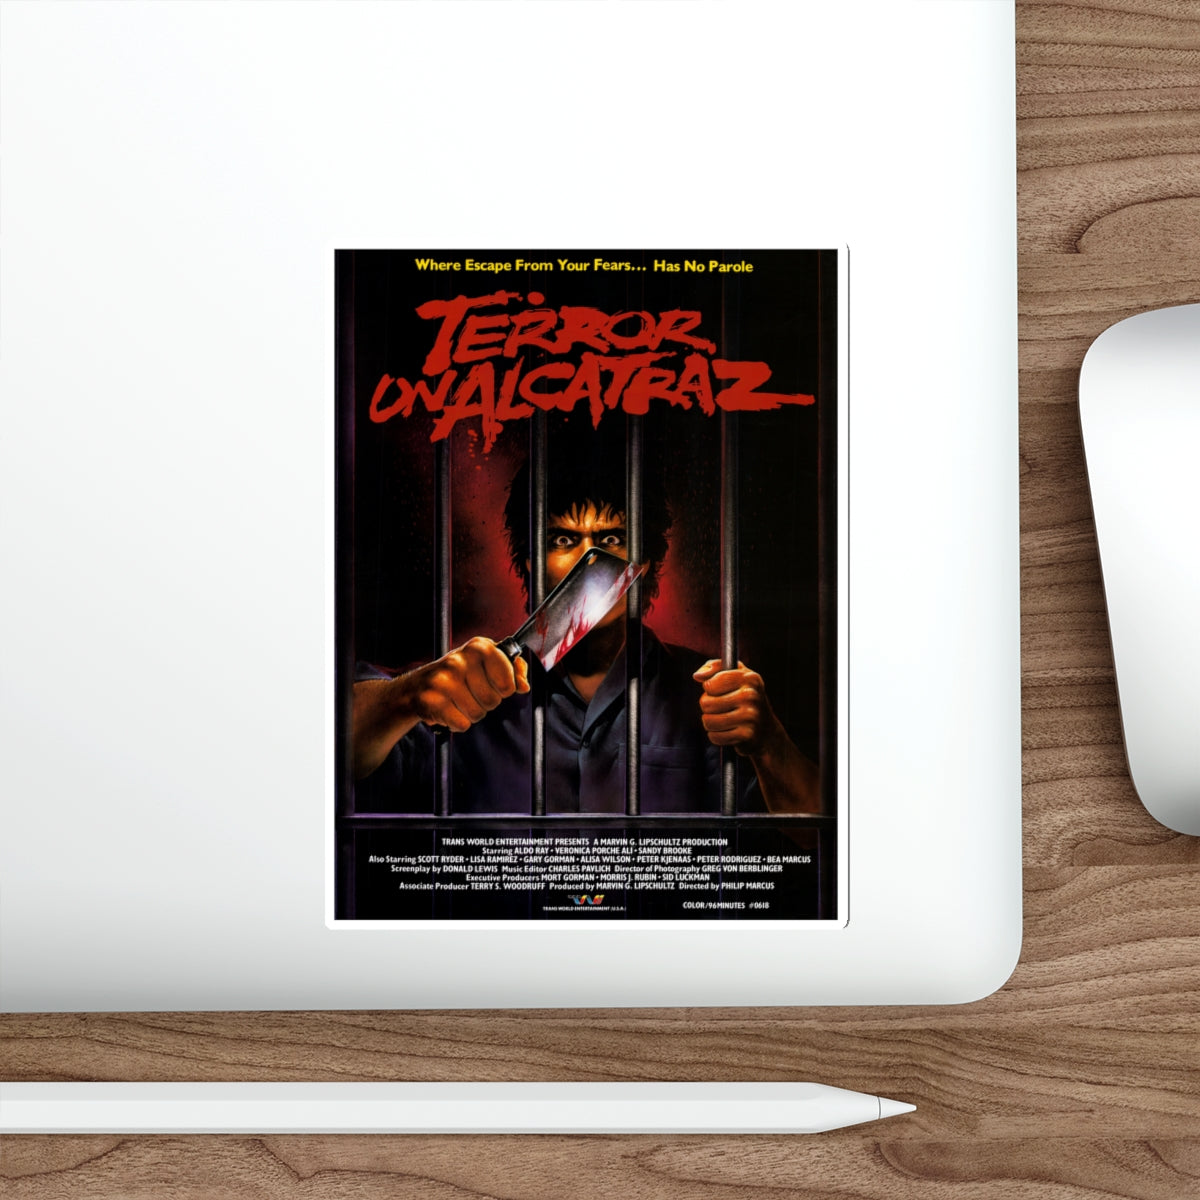 TERROR ON ALCATRAZ 1987 Movie Poster STICKER Vinyl Die-Cut Decal-The Sticker Space